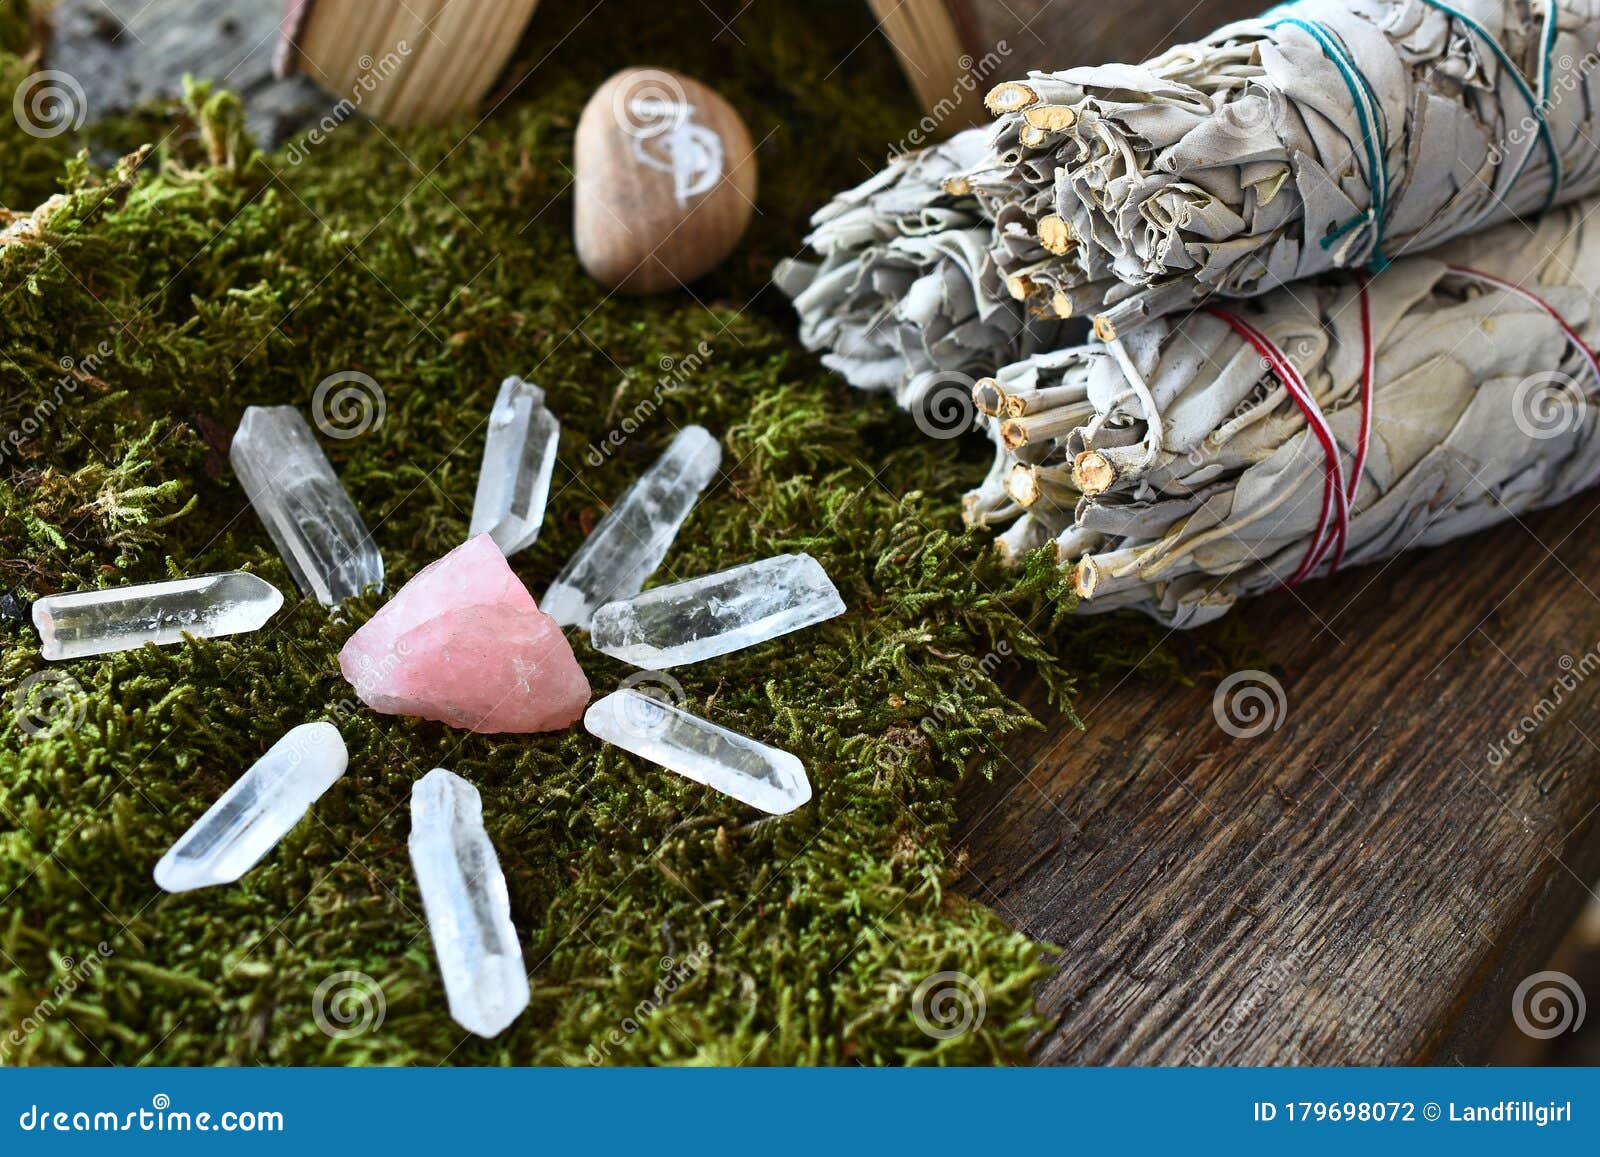 rose quartz crystals and white sage smudge sticks